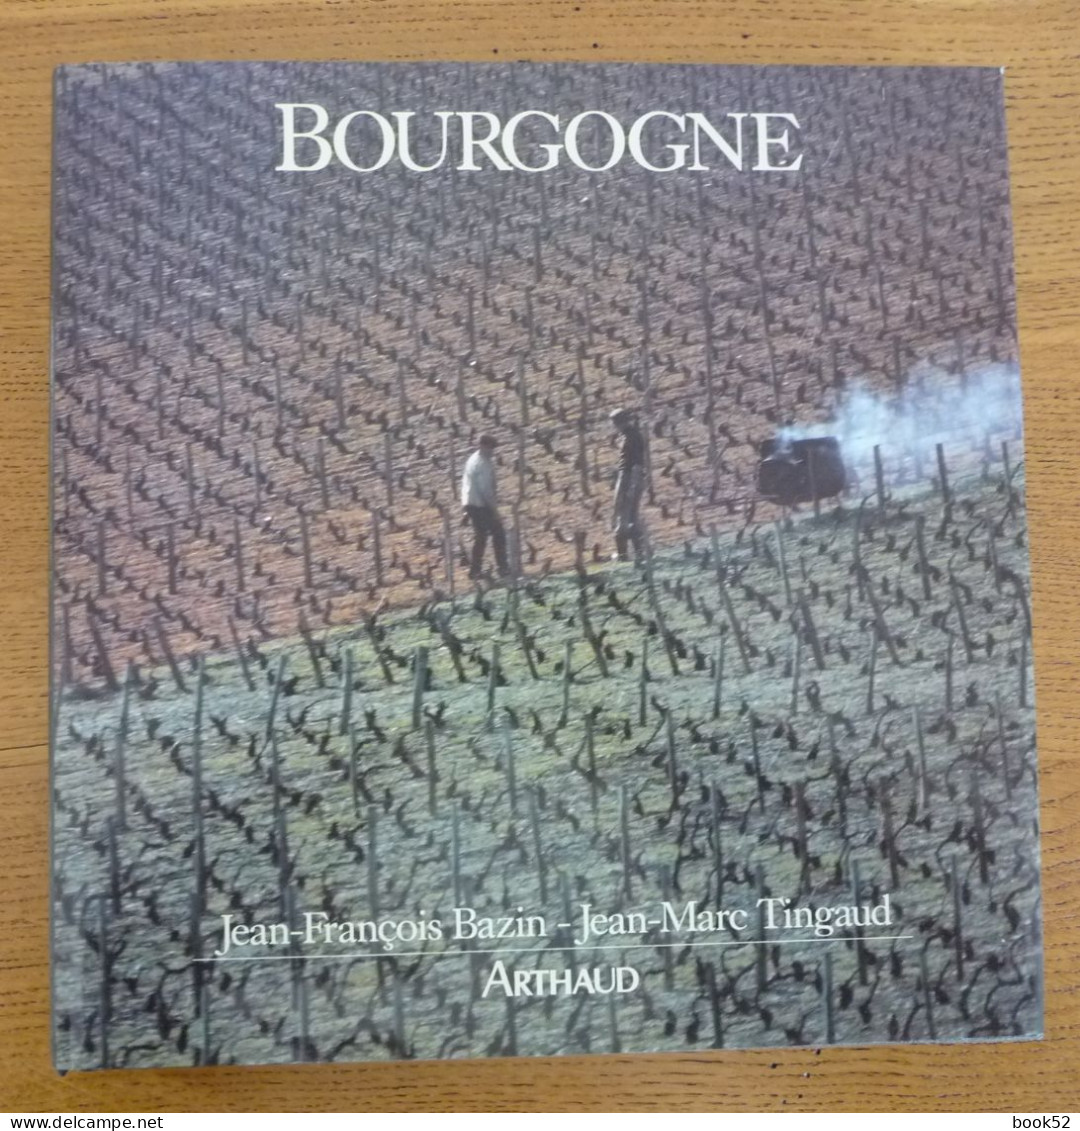 BOURGOGNE (J.-F. Bazin - J.-M. Tingaud) - Bourgogne